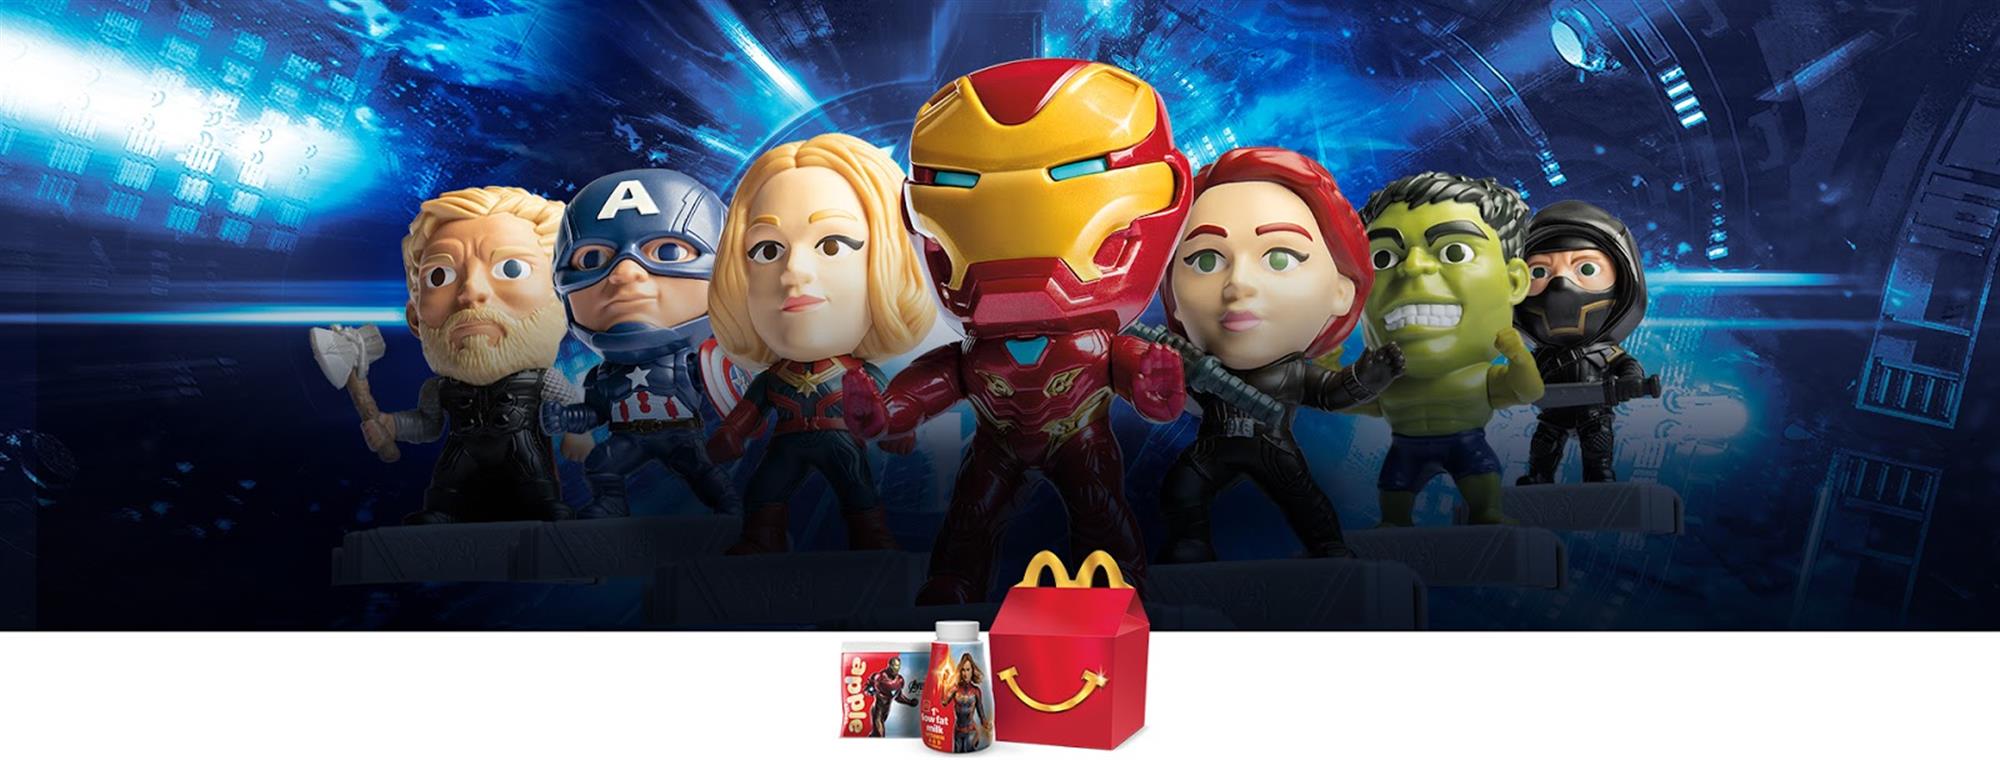 mcdonalds avengers toys 2019